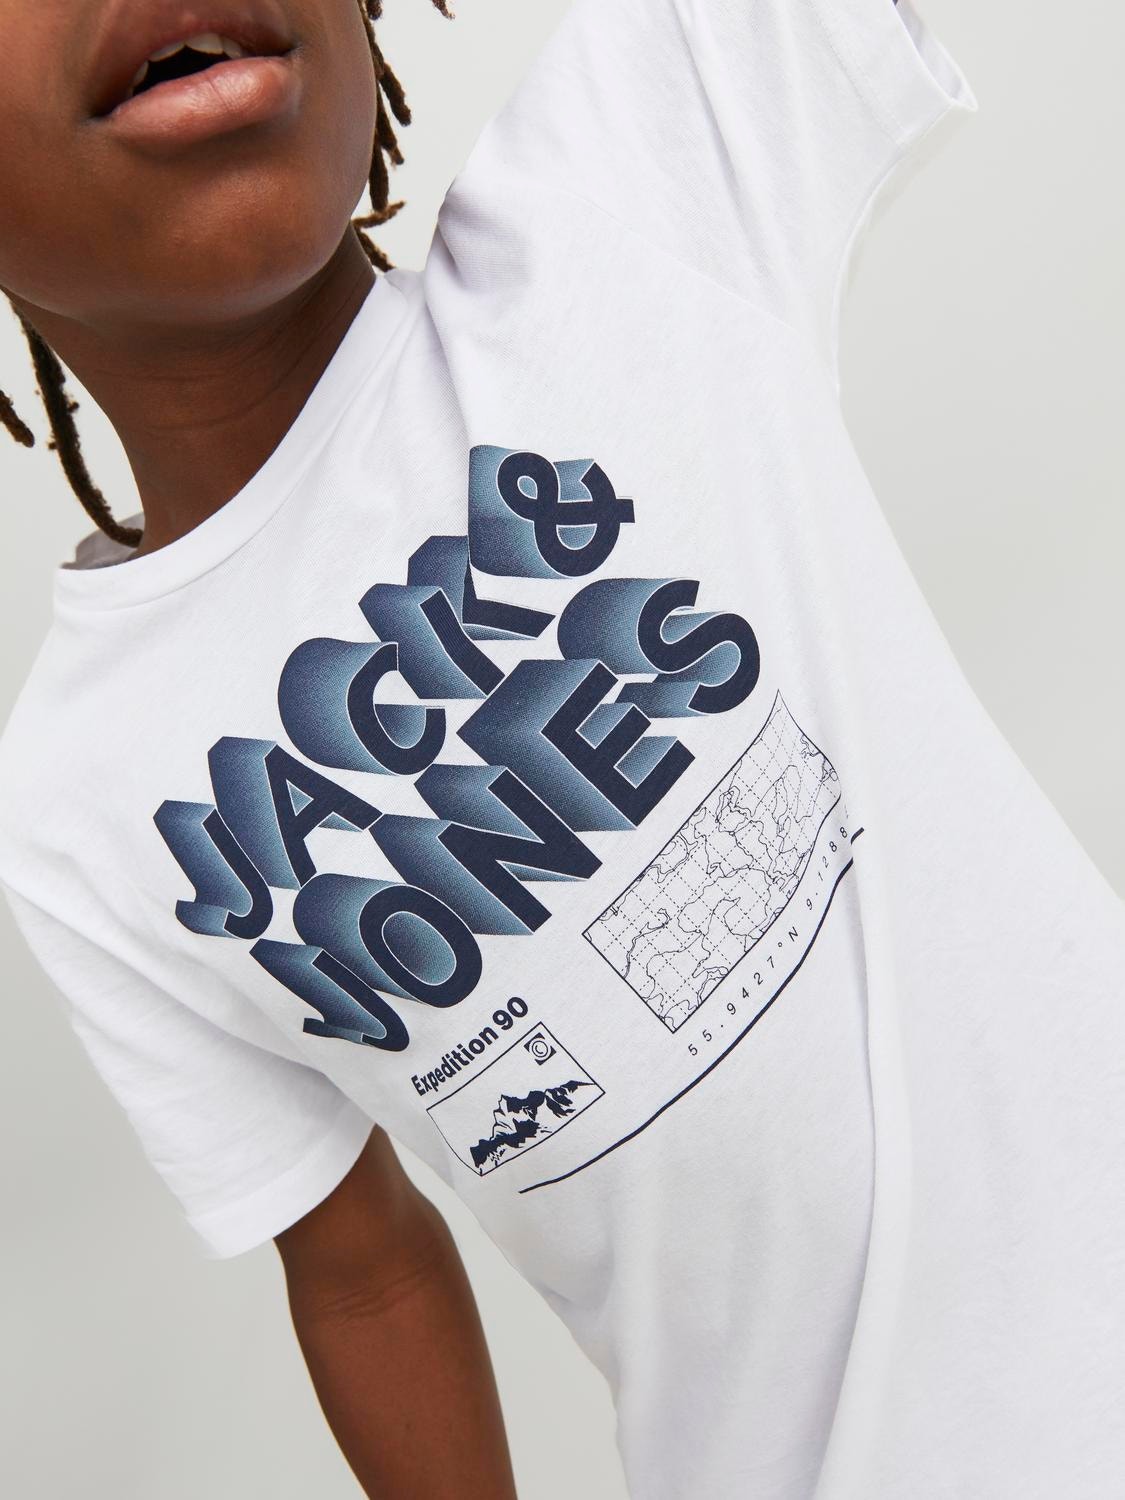 Jack & Jones Logo T-shirt Für jungs -White - 12234450